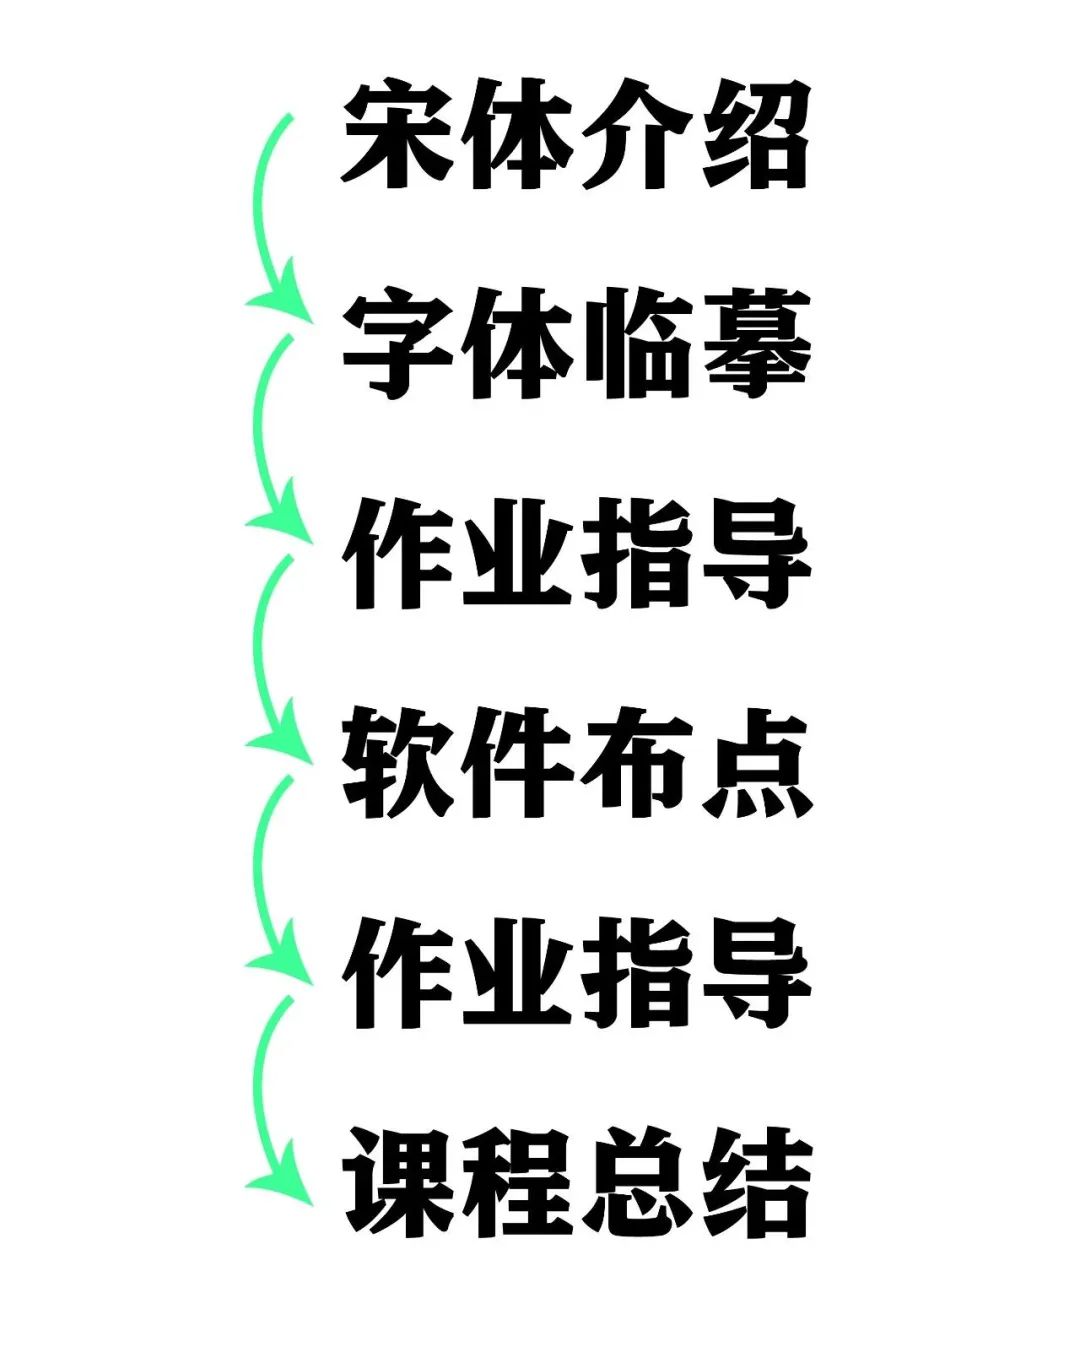 汉仪星课堂丨中文字体设计训练课